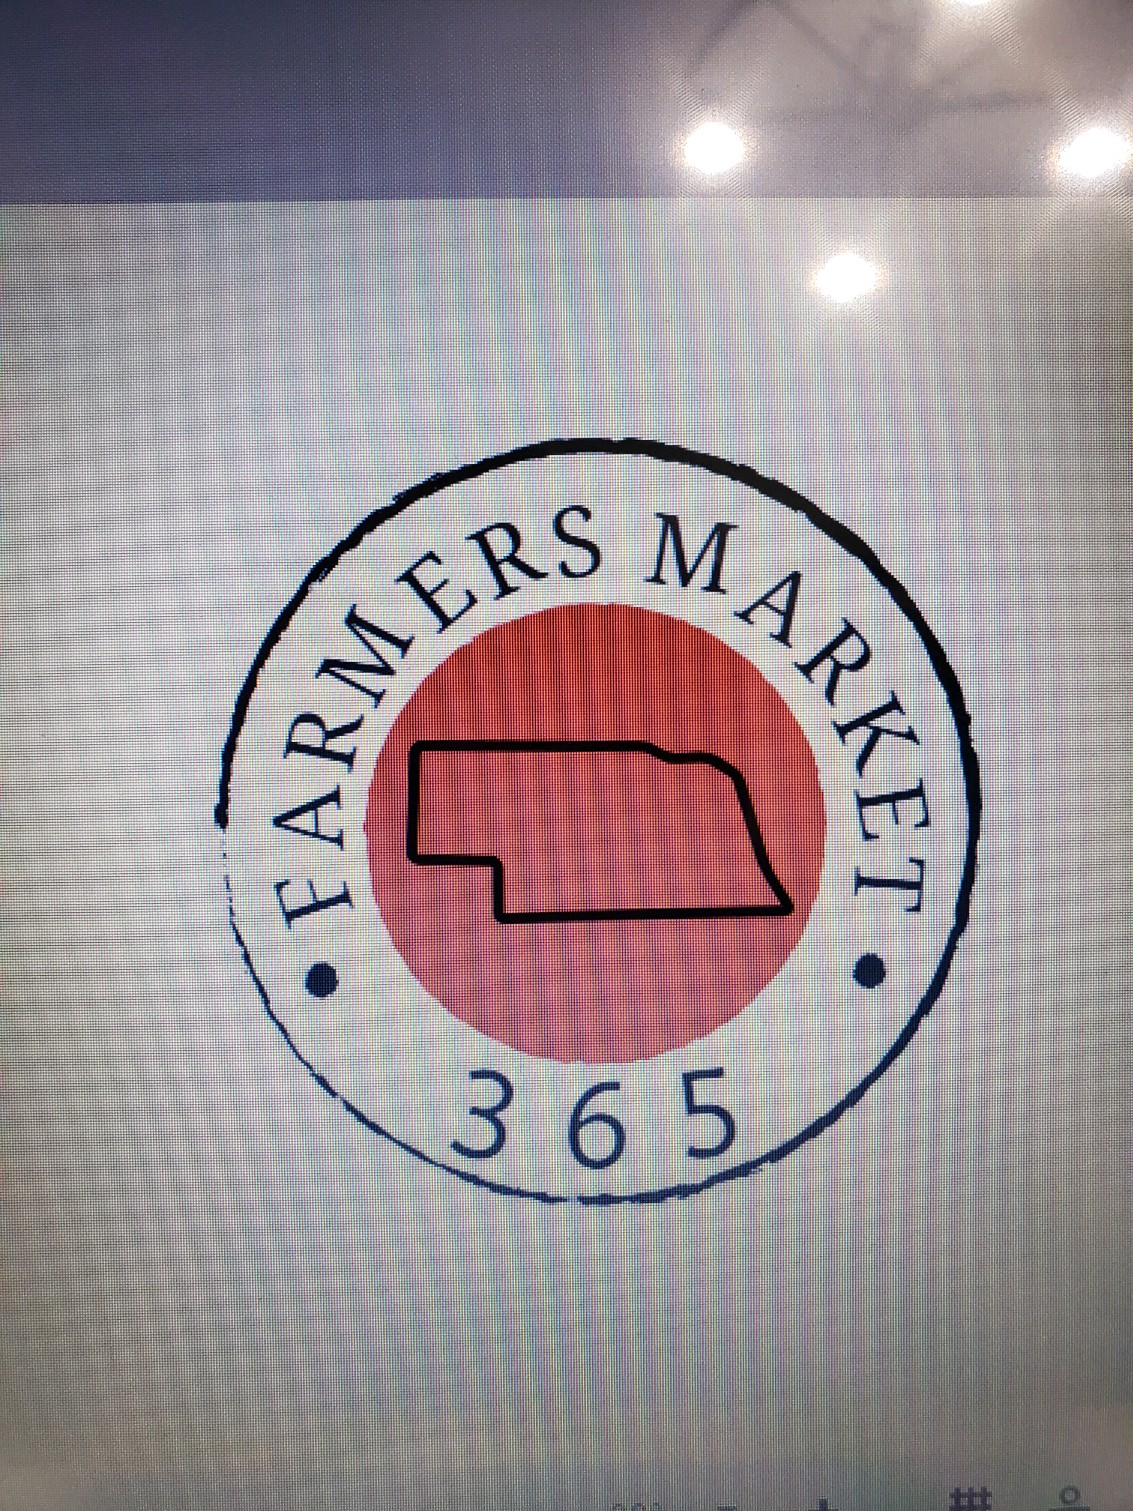 Farmers Market 365 Logo